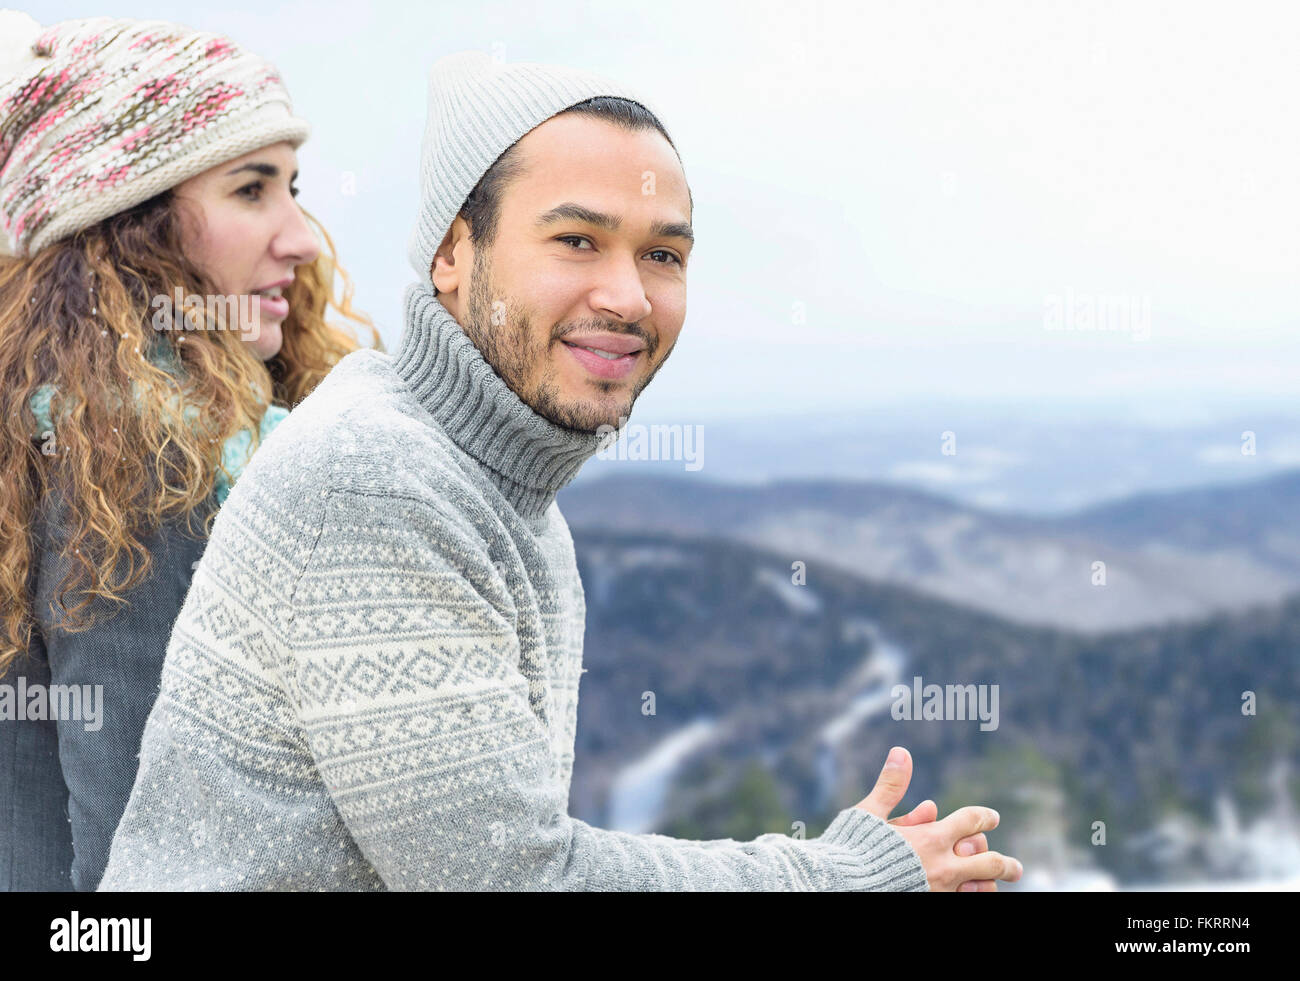 Couple admiring scenic view Stock Photo